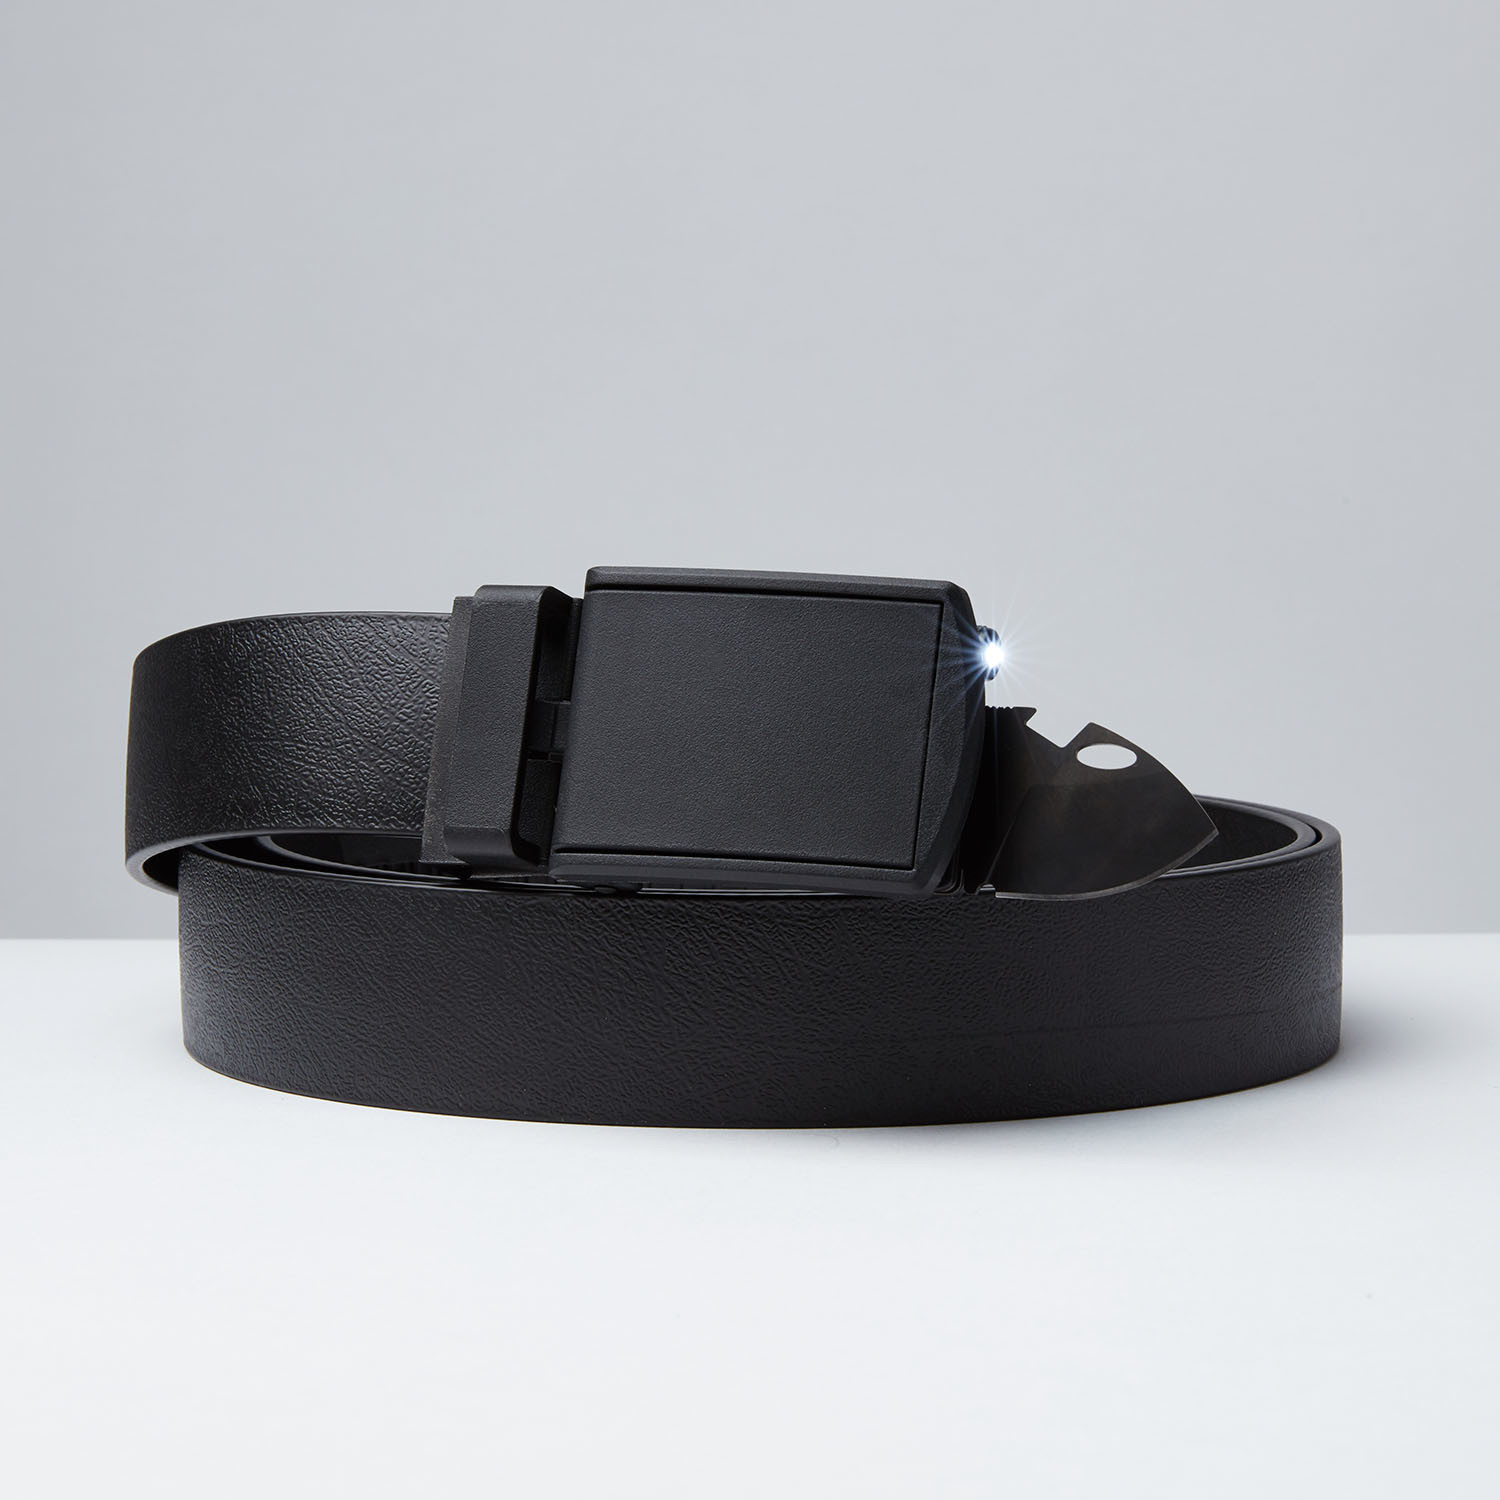 modern belt buckles